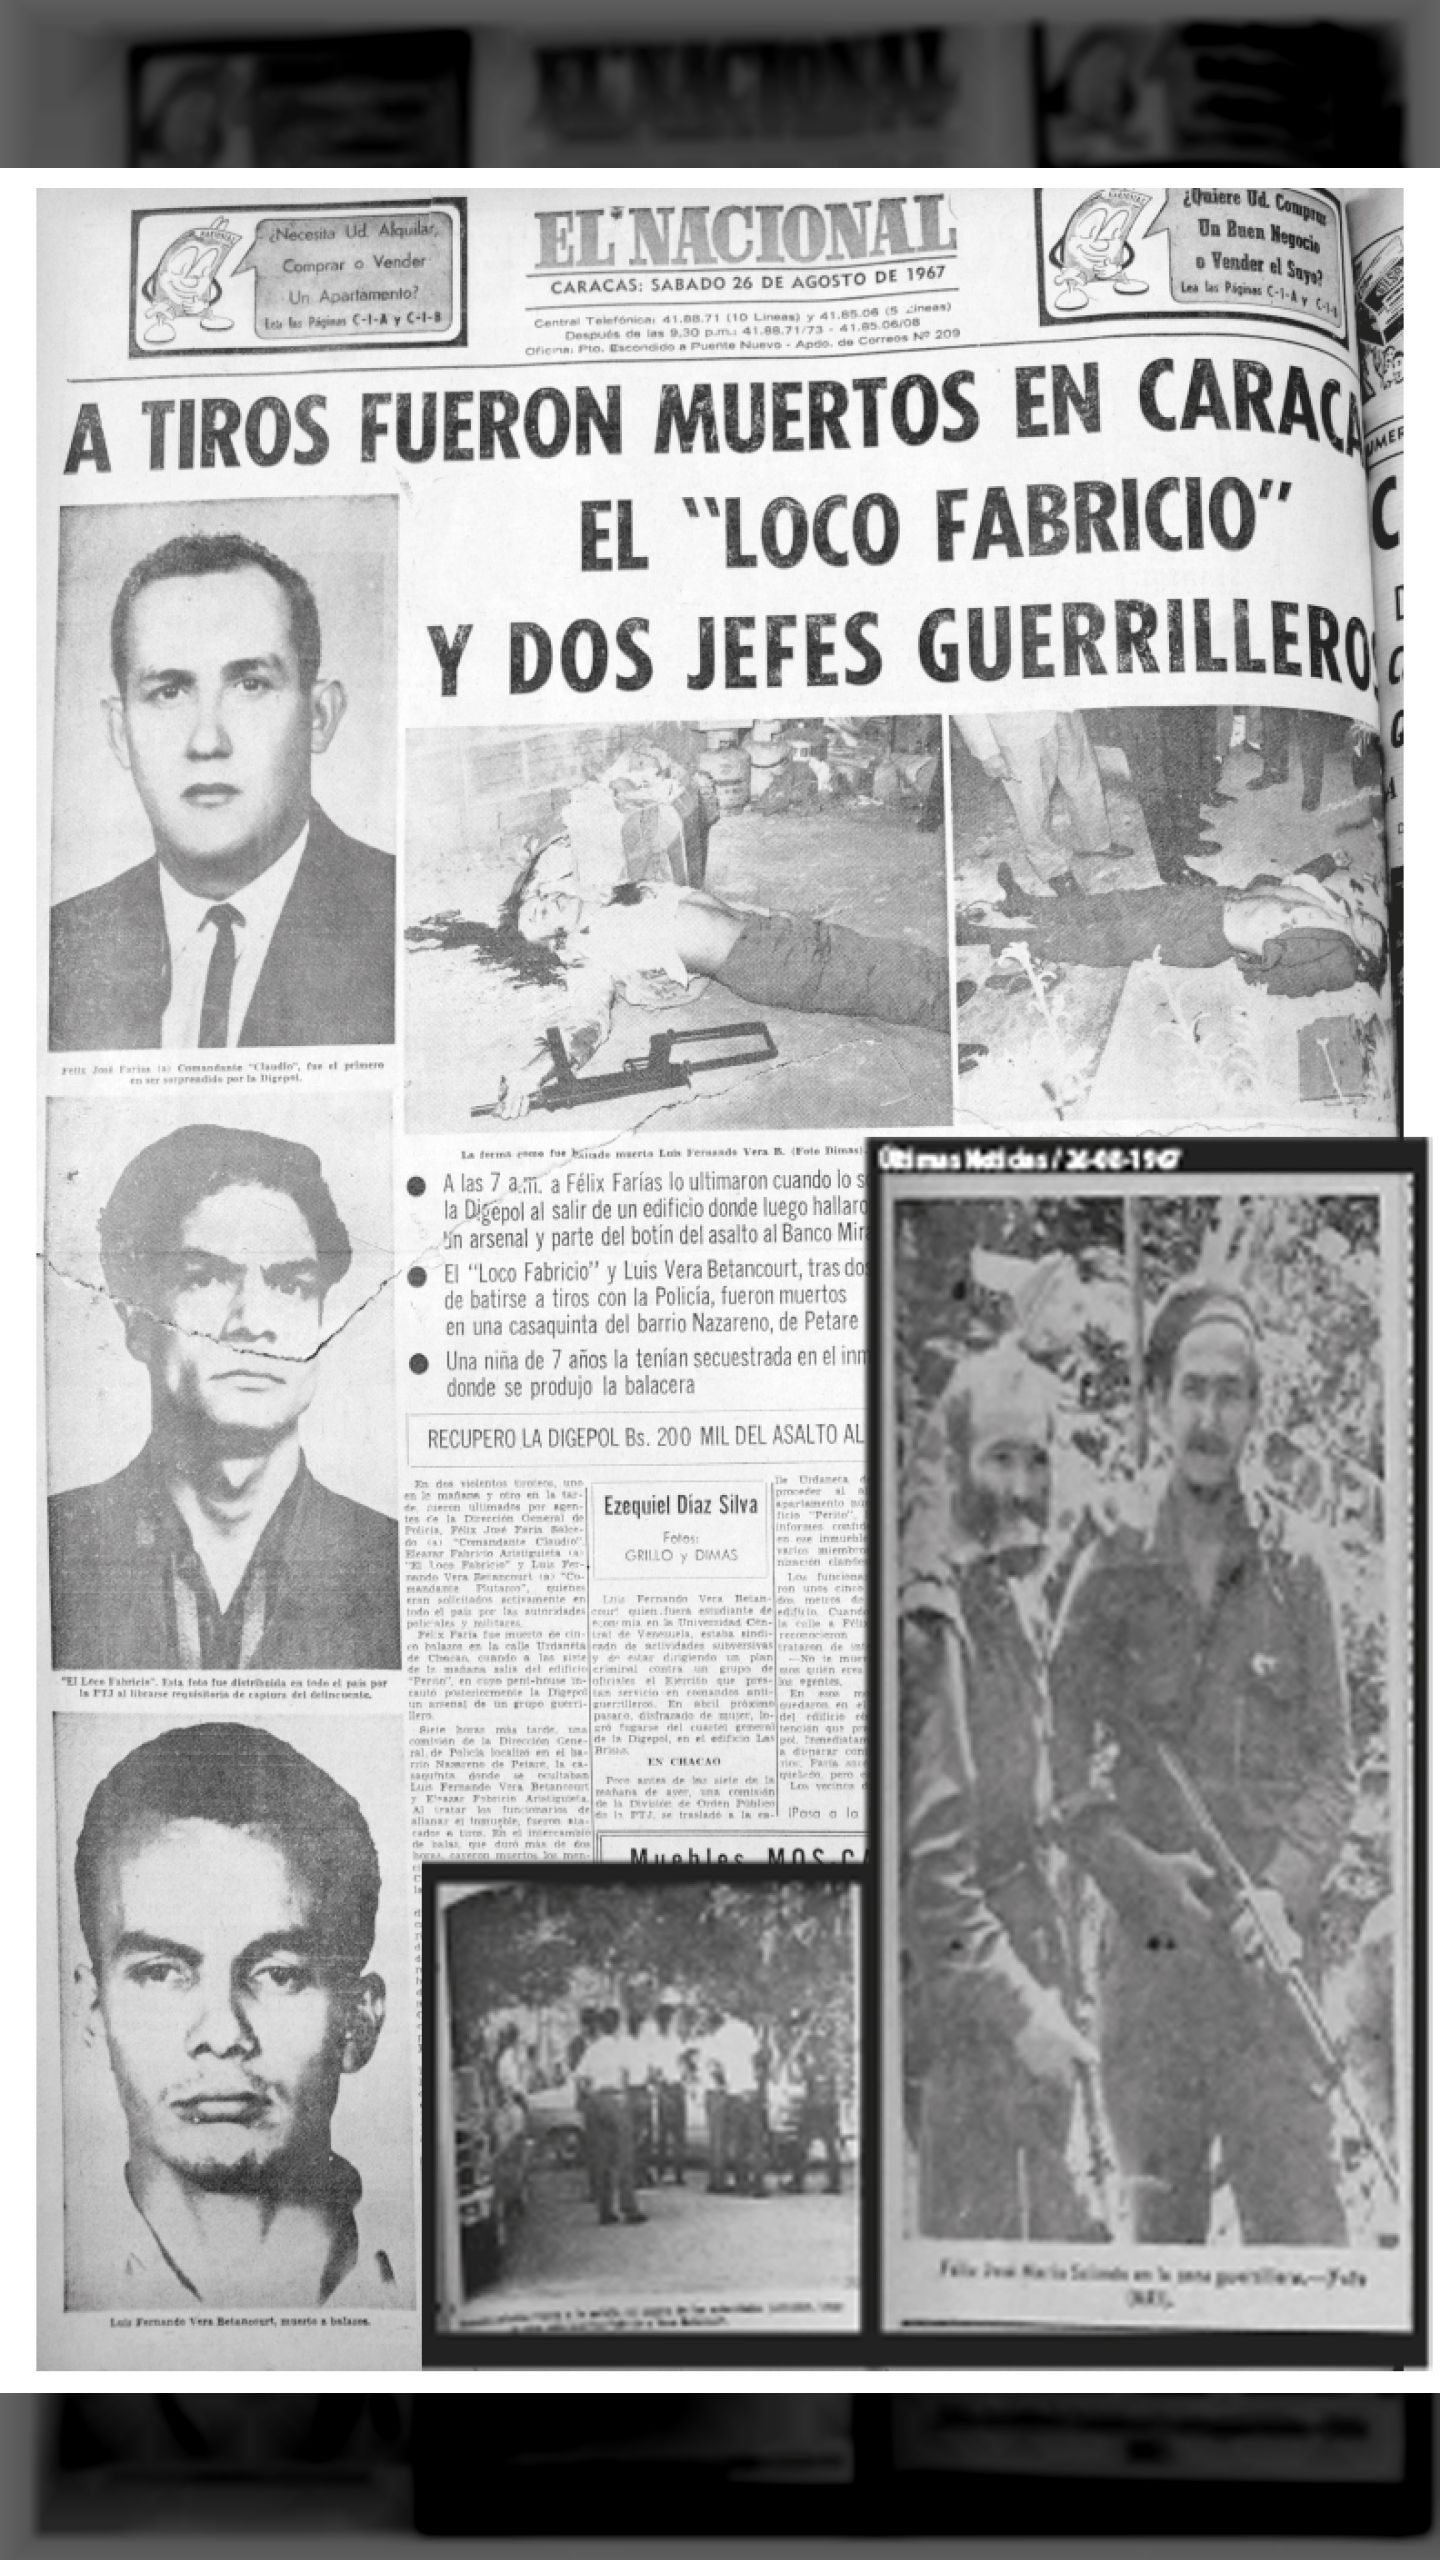 LA DIGEPOL PERPETRA DOS MASACRES EN CARACAS (EL NACIONAL, 27 de agosto 1967)